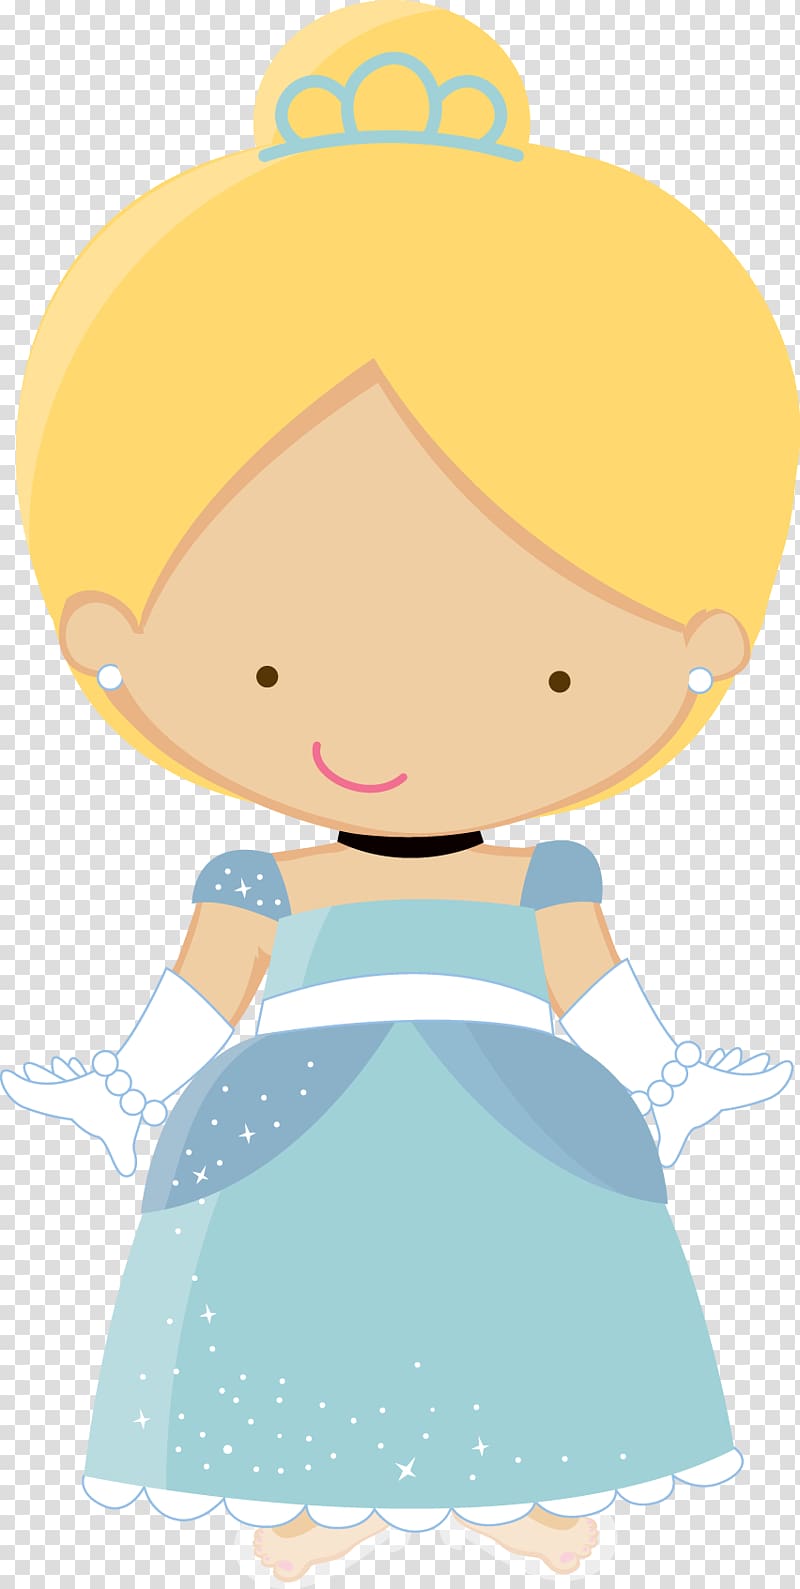 Cinderella Rapunzel Disney Princess, castle princess transparent background PNG clipart